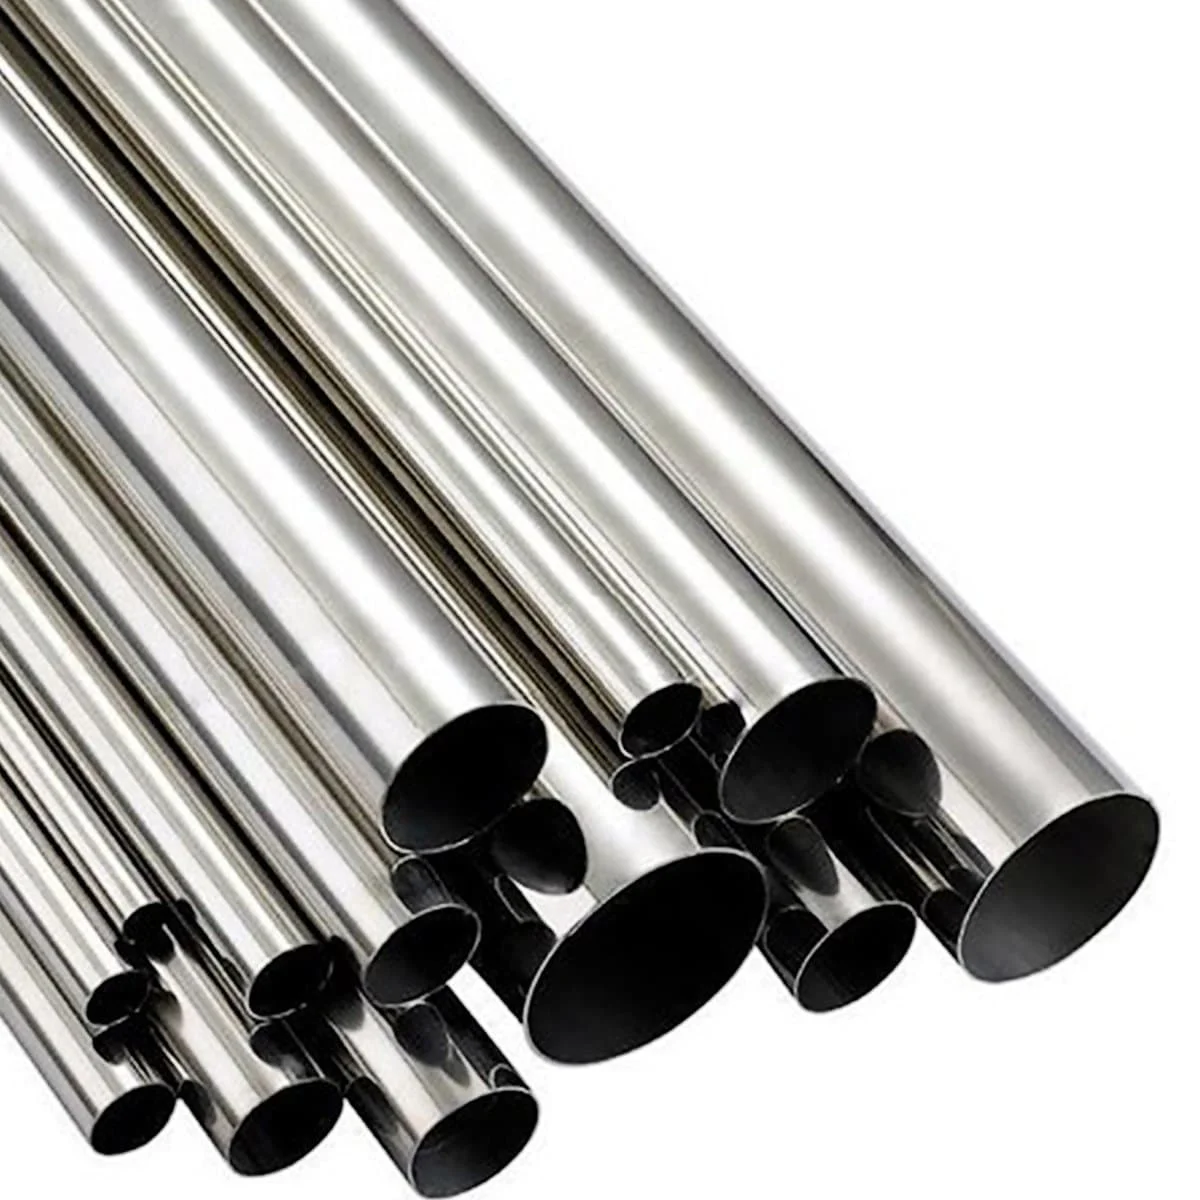 Ống đúc inox 316 là một loại ống được sử dụng rộng rãi